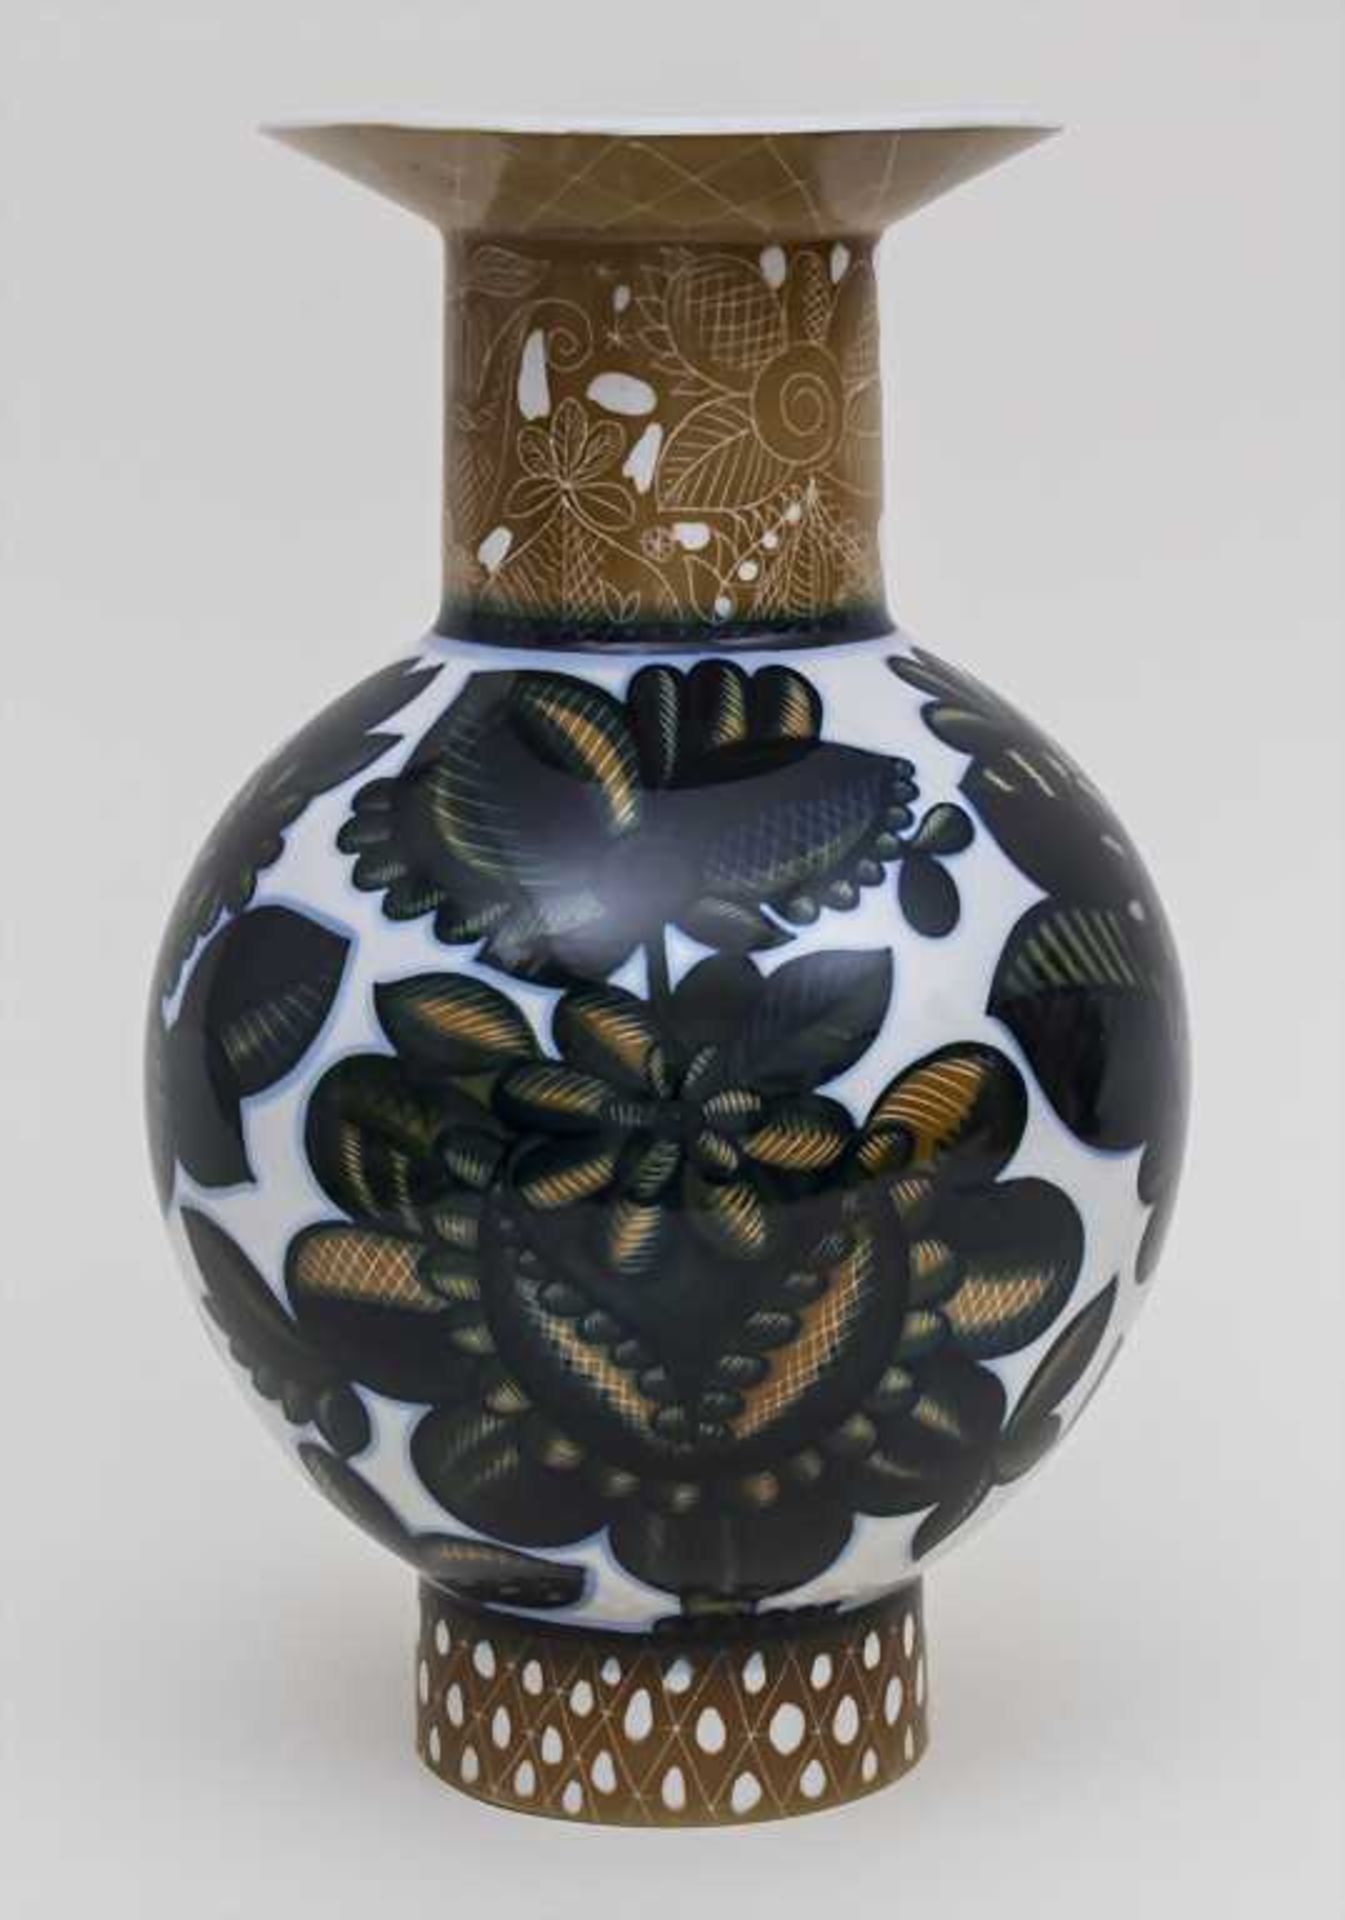 Große Porzellanvase / Big Porcelain Vase, Leningrad, um 1930 Material: Porzellan, unterglasur - Image 2 of 3